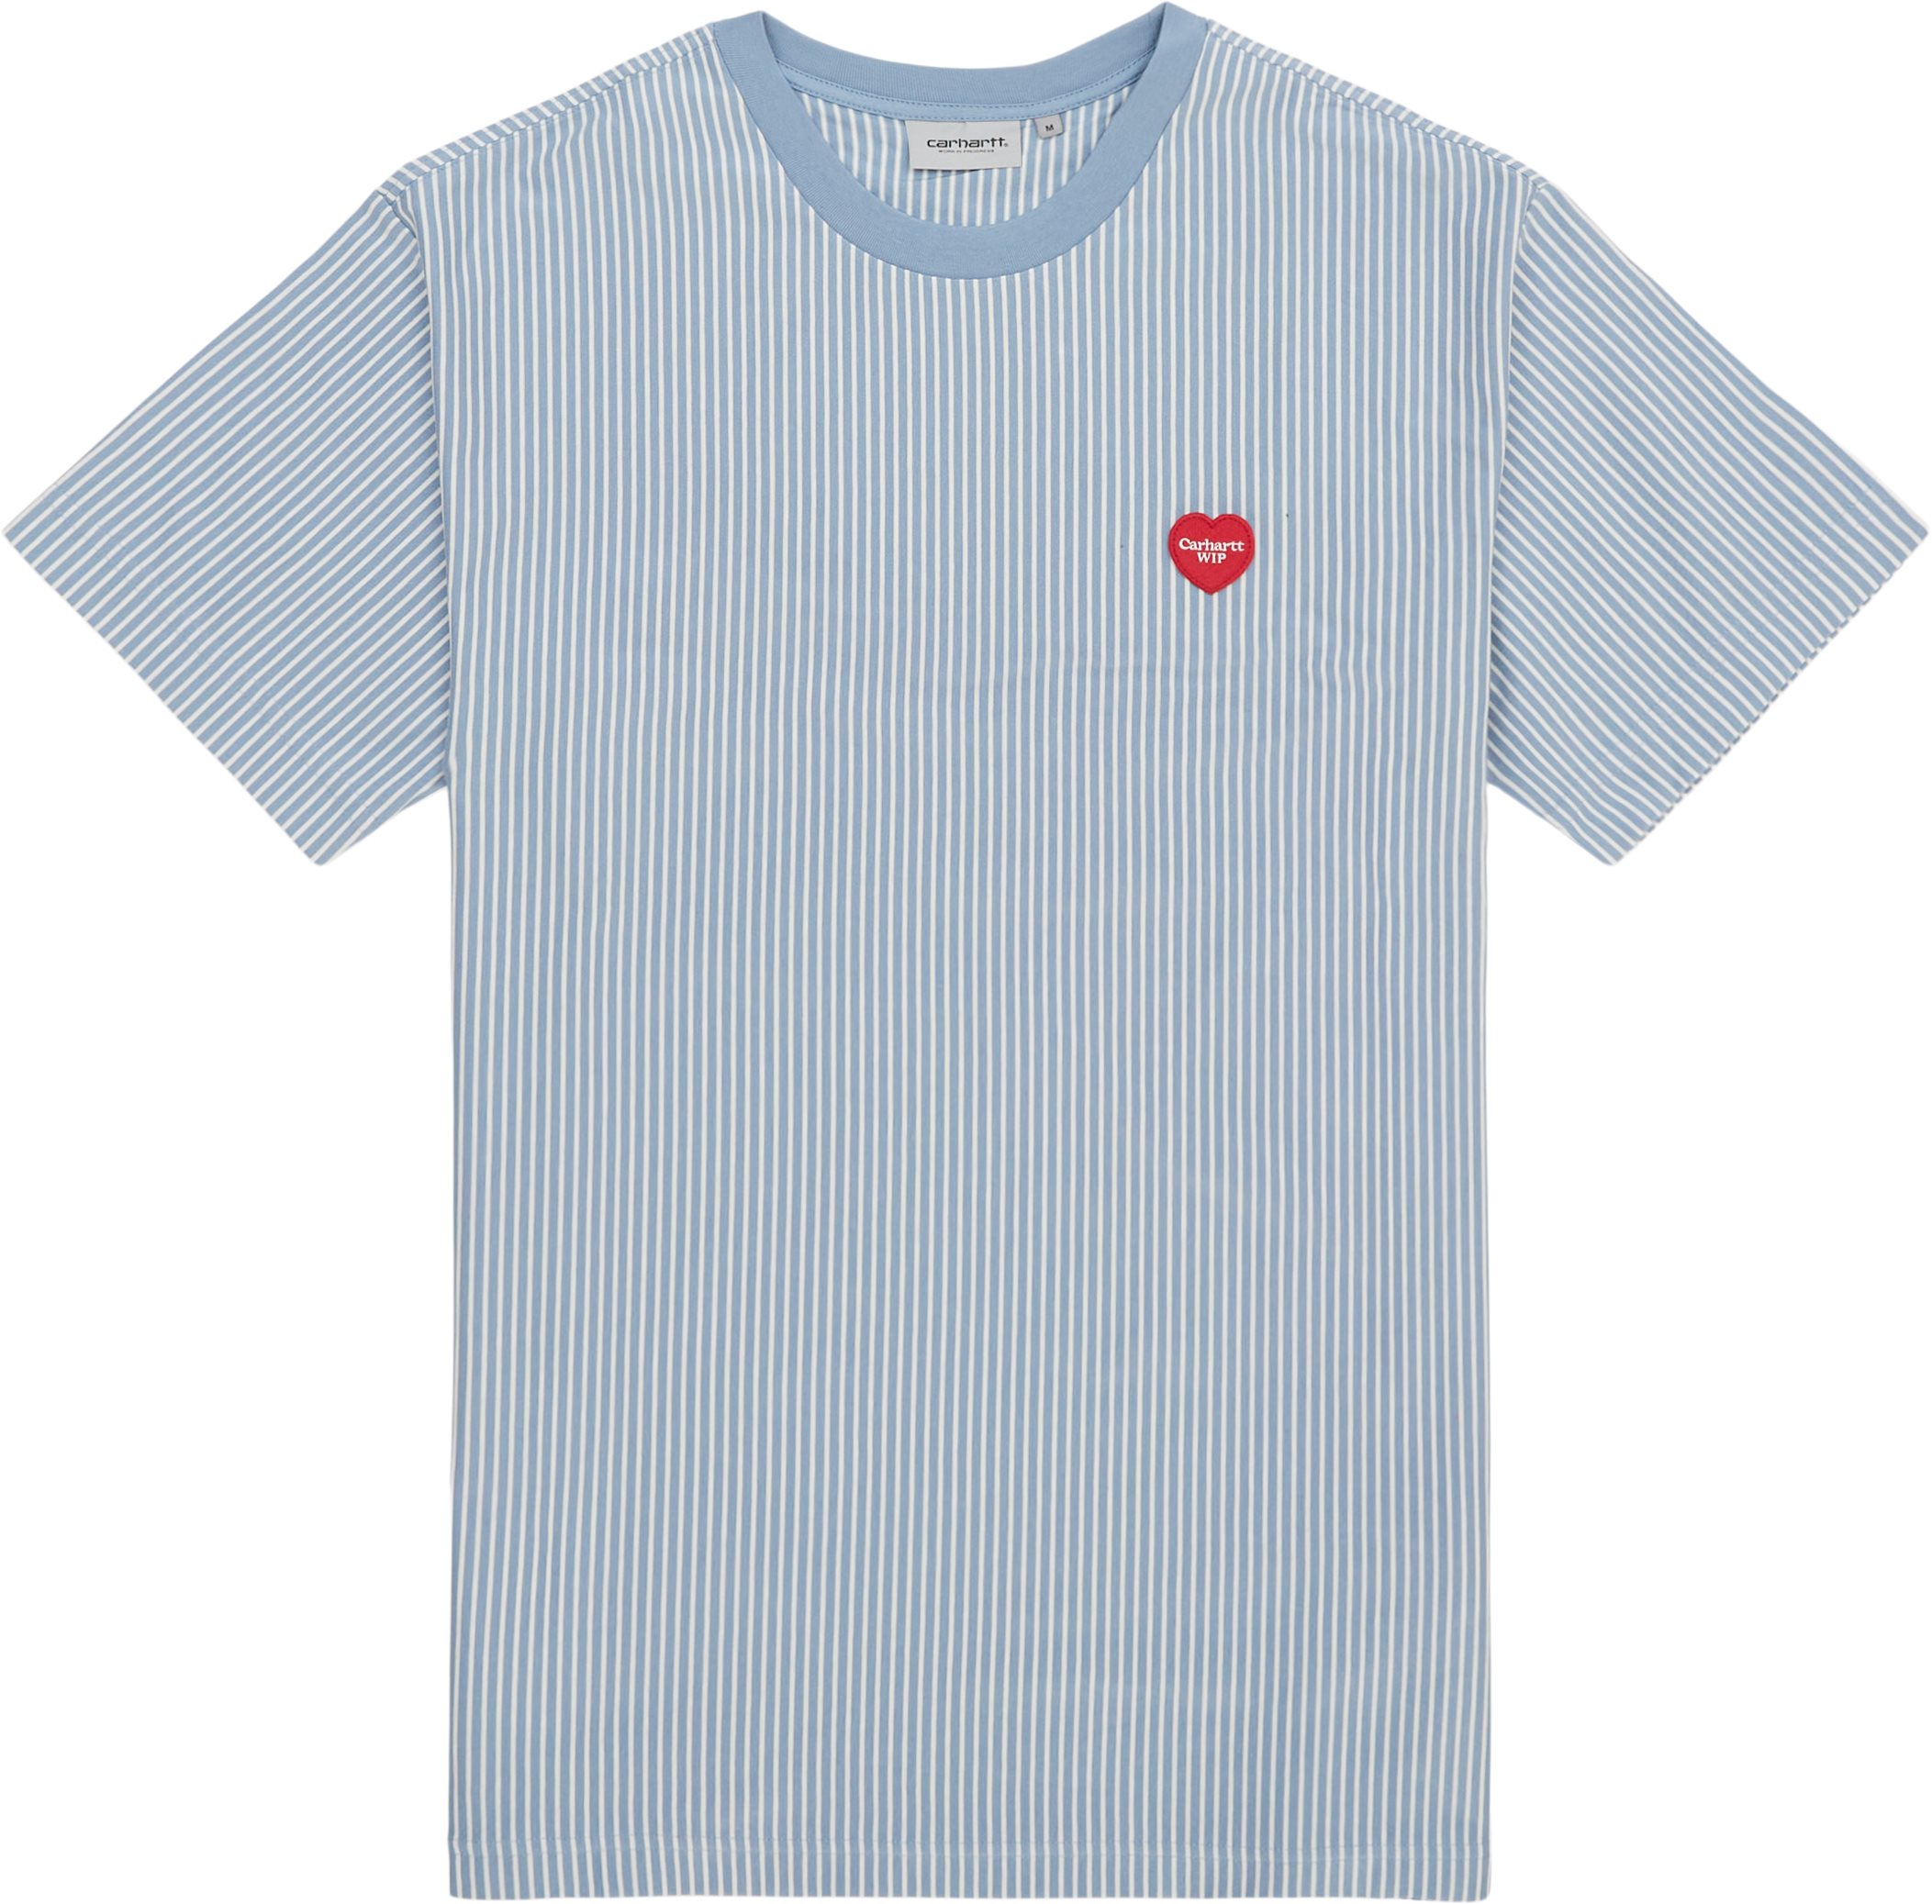 Carhartt WIP T-shirts S/S TERRELL T-SHIRT I032127 Vit